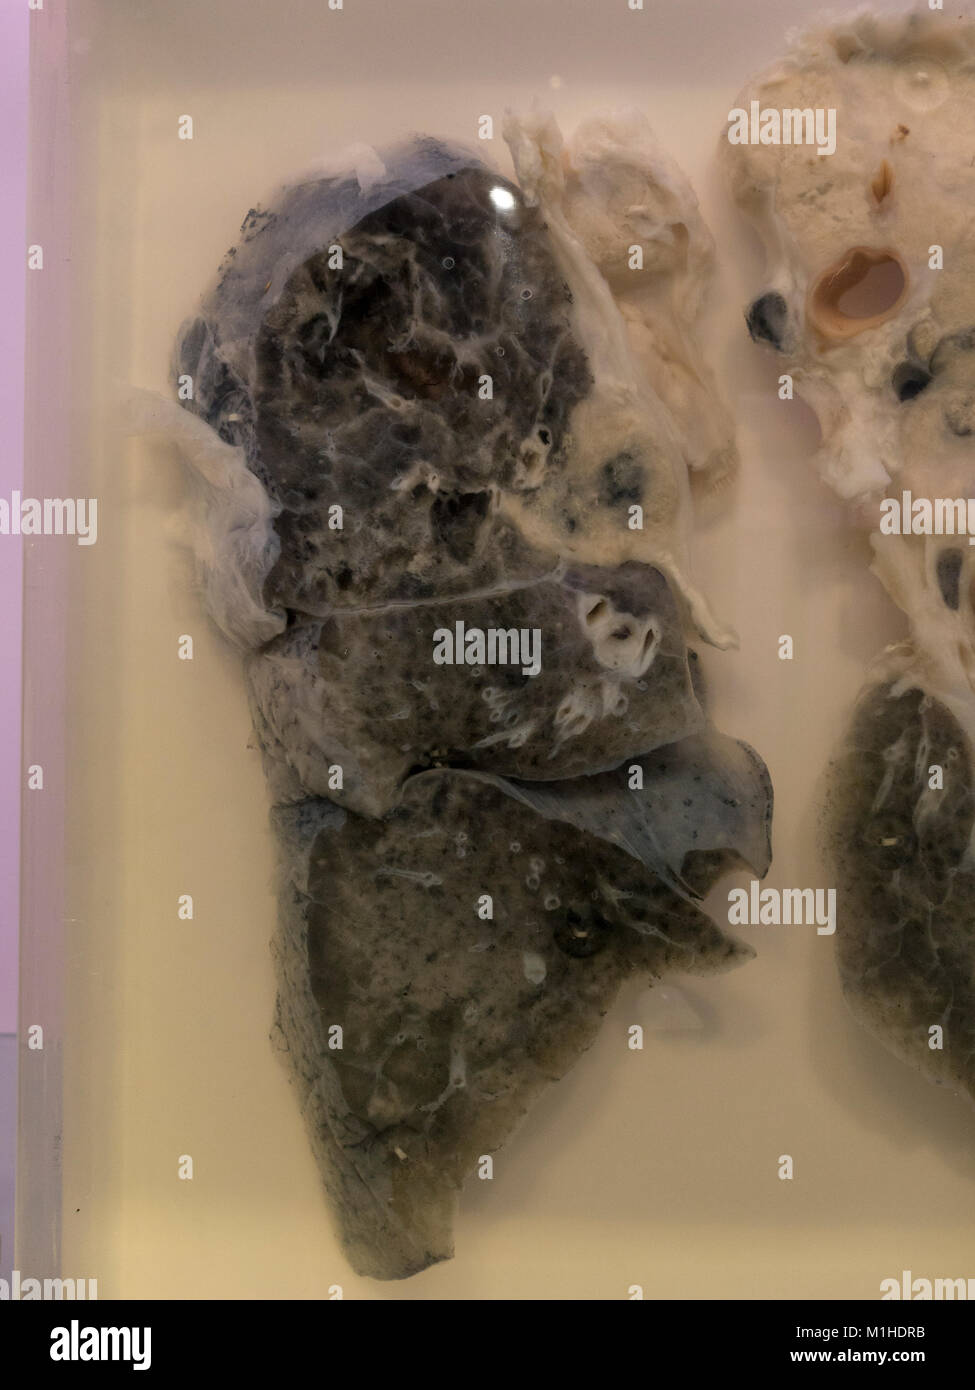 Ein Raucher Lunge Mit Karzinom Krebs Im National Museum Von Gesundheit Und Medizin Silver Spring Md Usa Stockfotografie Alamy